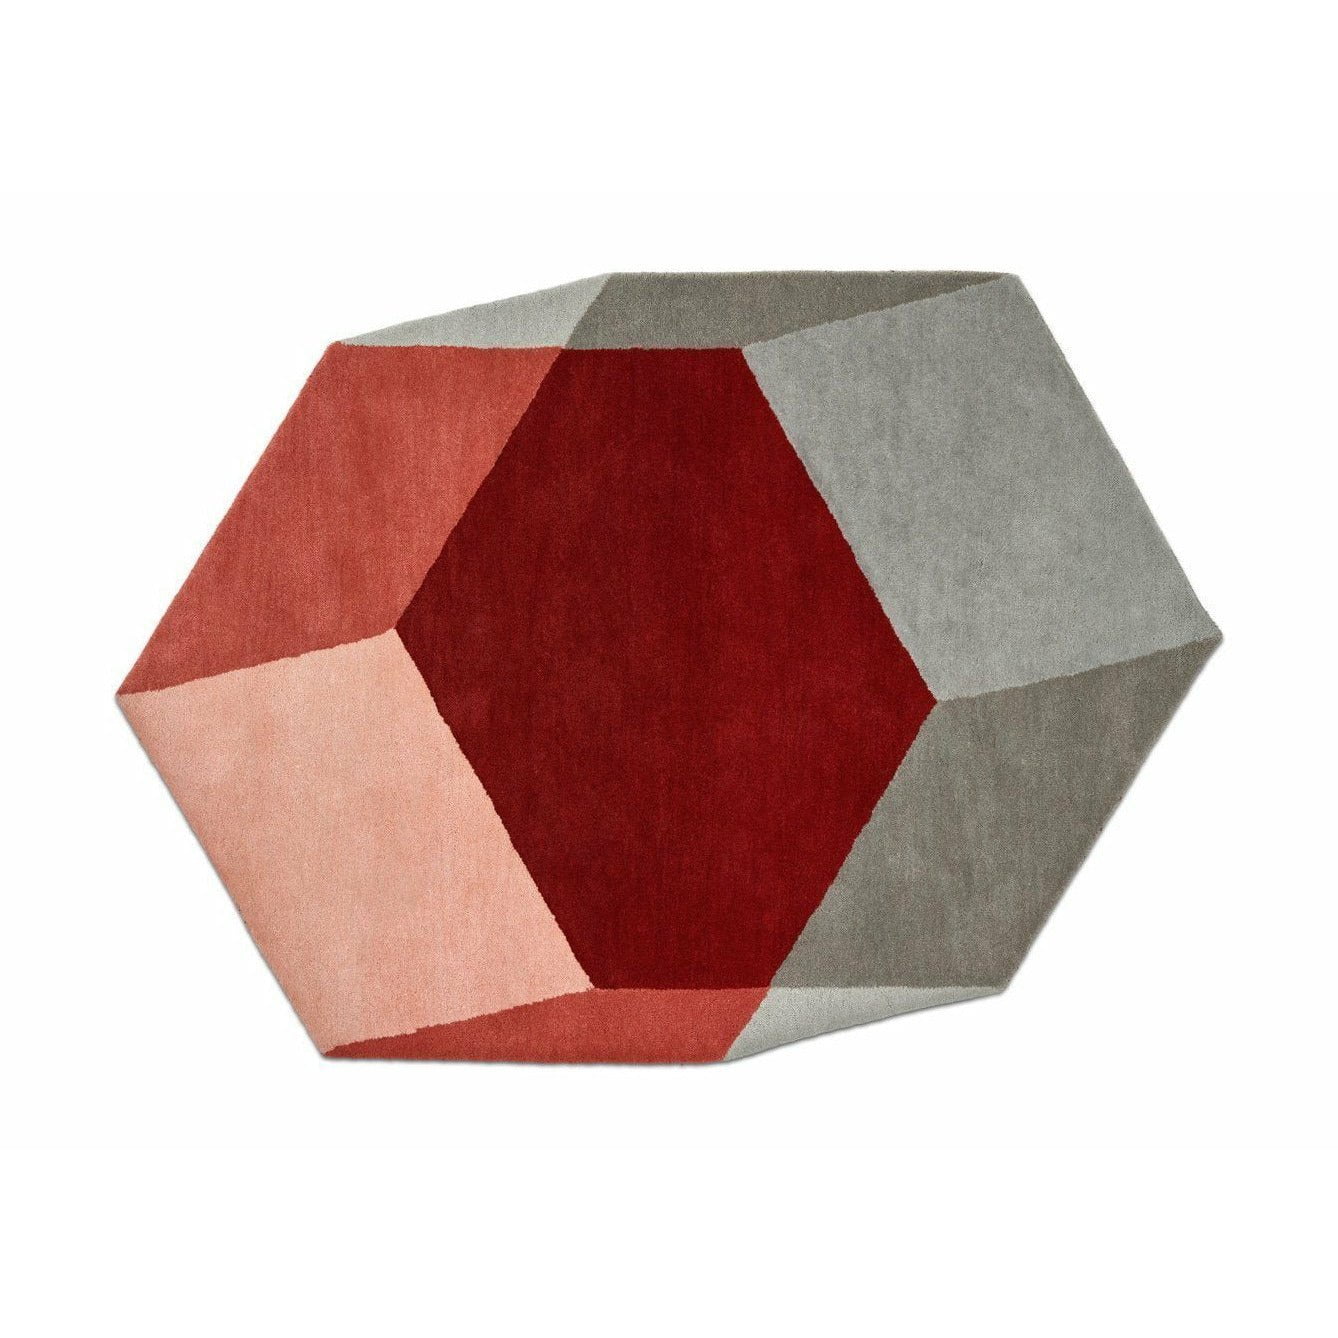 PUIK Iso filt hexagonal, röd